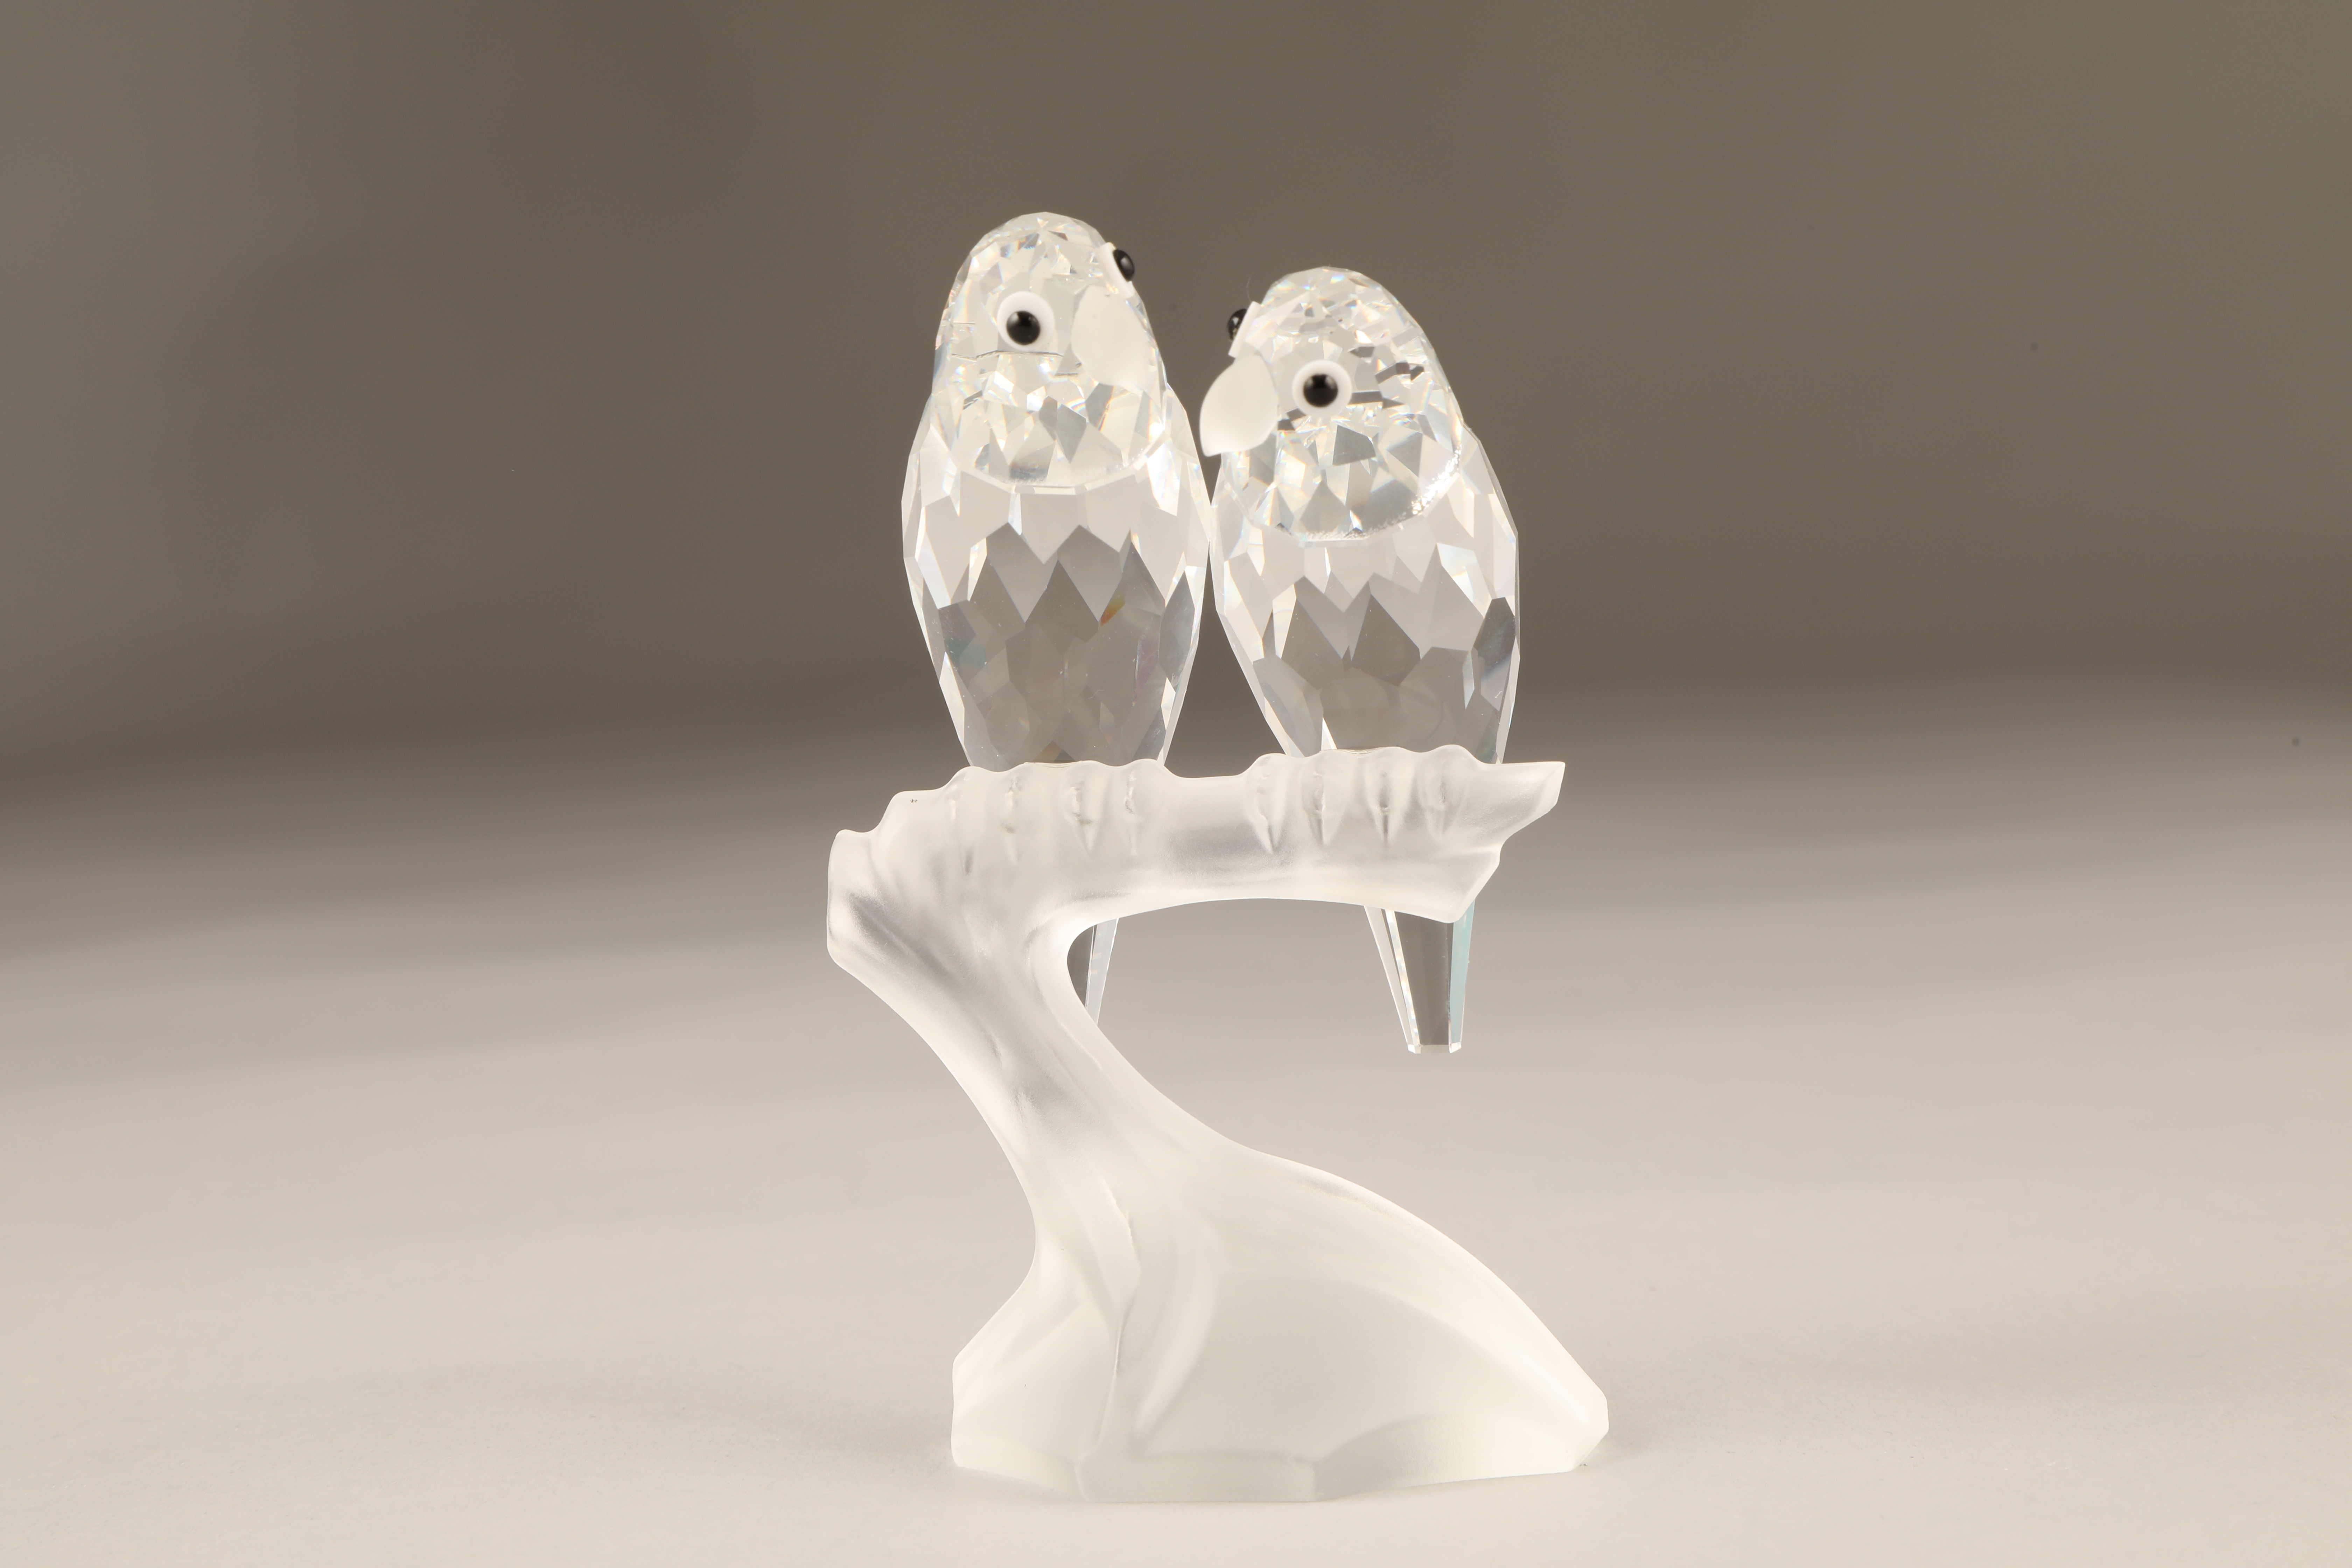 Swarovski crystal figure, 'Togetherness' The Lovebirds, boxed. 10.5cm high